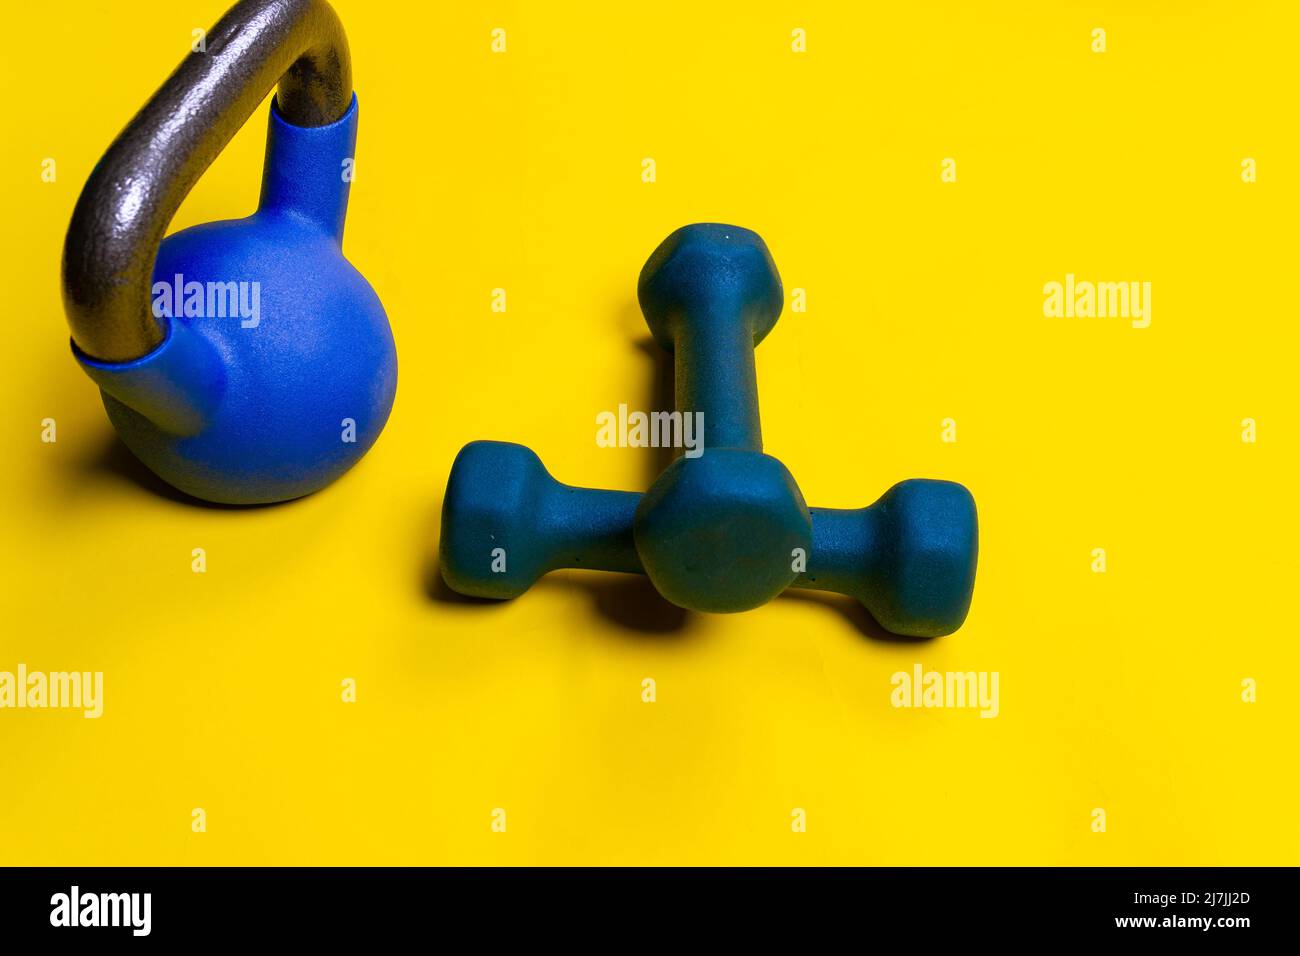 Amarillo espacio kettlebell azul aislado ackground ejercicio de fitness, concepto de estilo de vida saludable bodybuilding dumbbell de barbell de estilo de vida Foto de stock